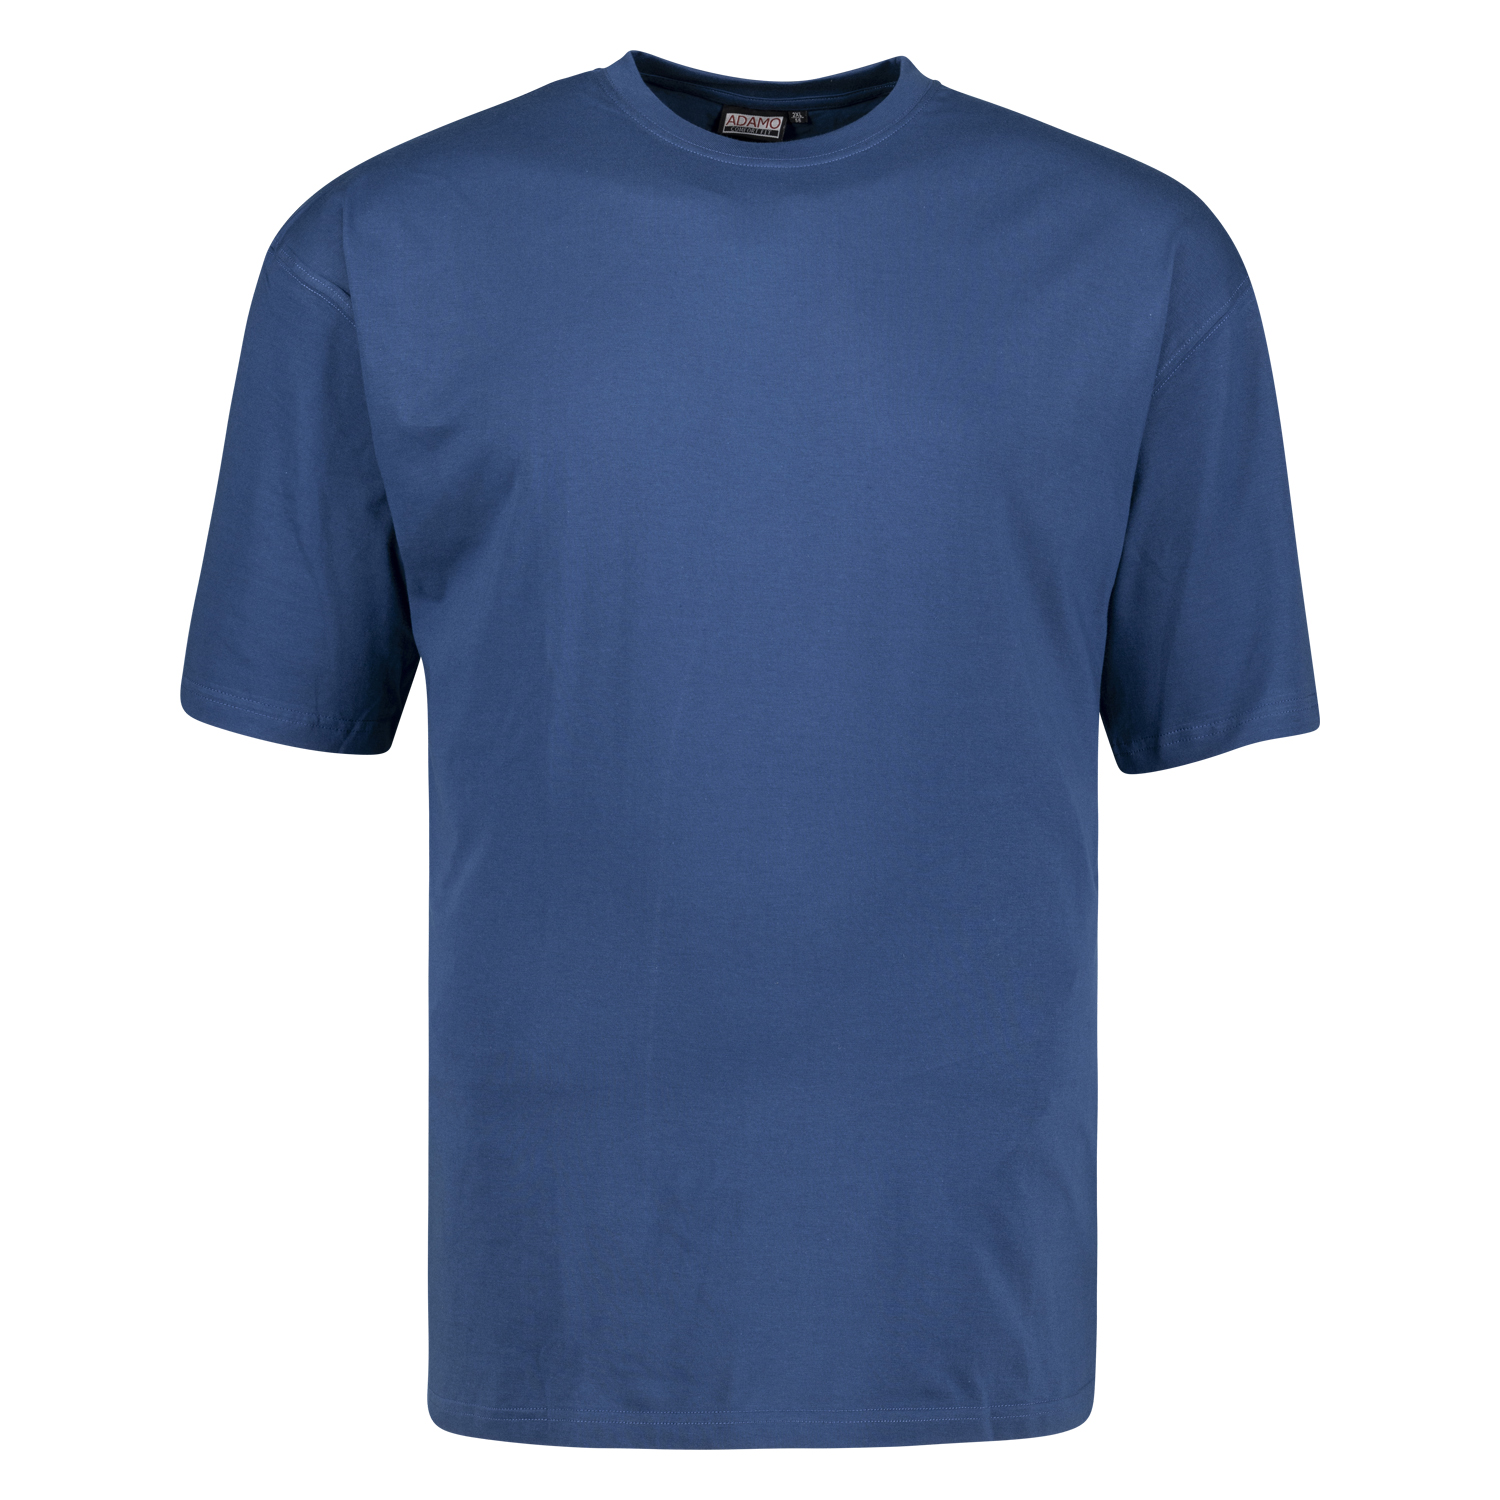 T-shirt bleu denim CONFORT FIT MARLON by ADAMO jusqu'à la grande taille 12XL - pack de deux